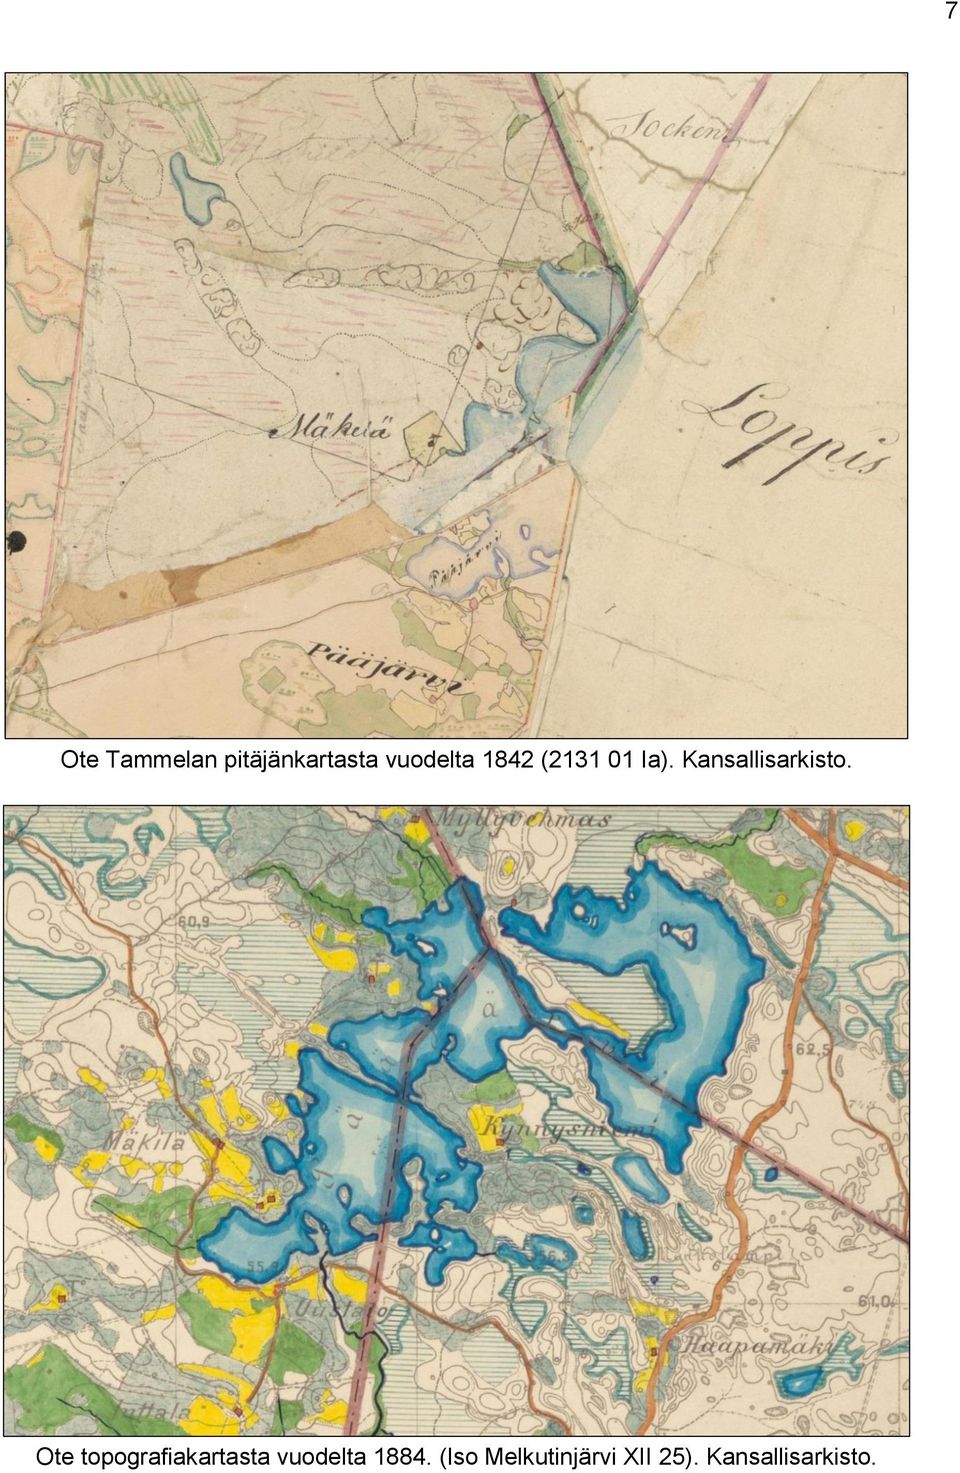 Ote topografiakartasta vuodelta 1884.